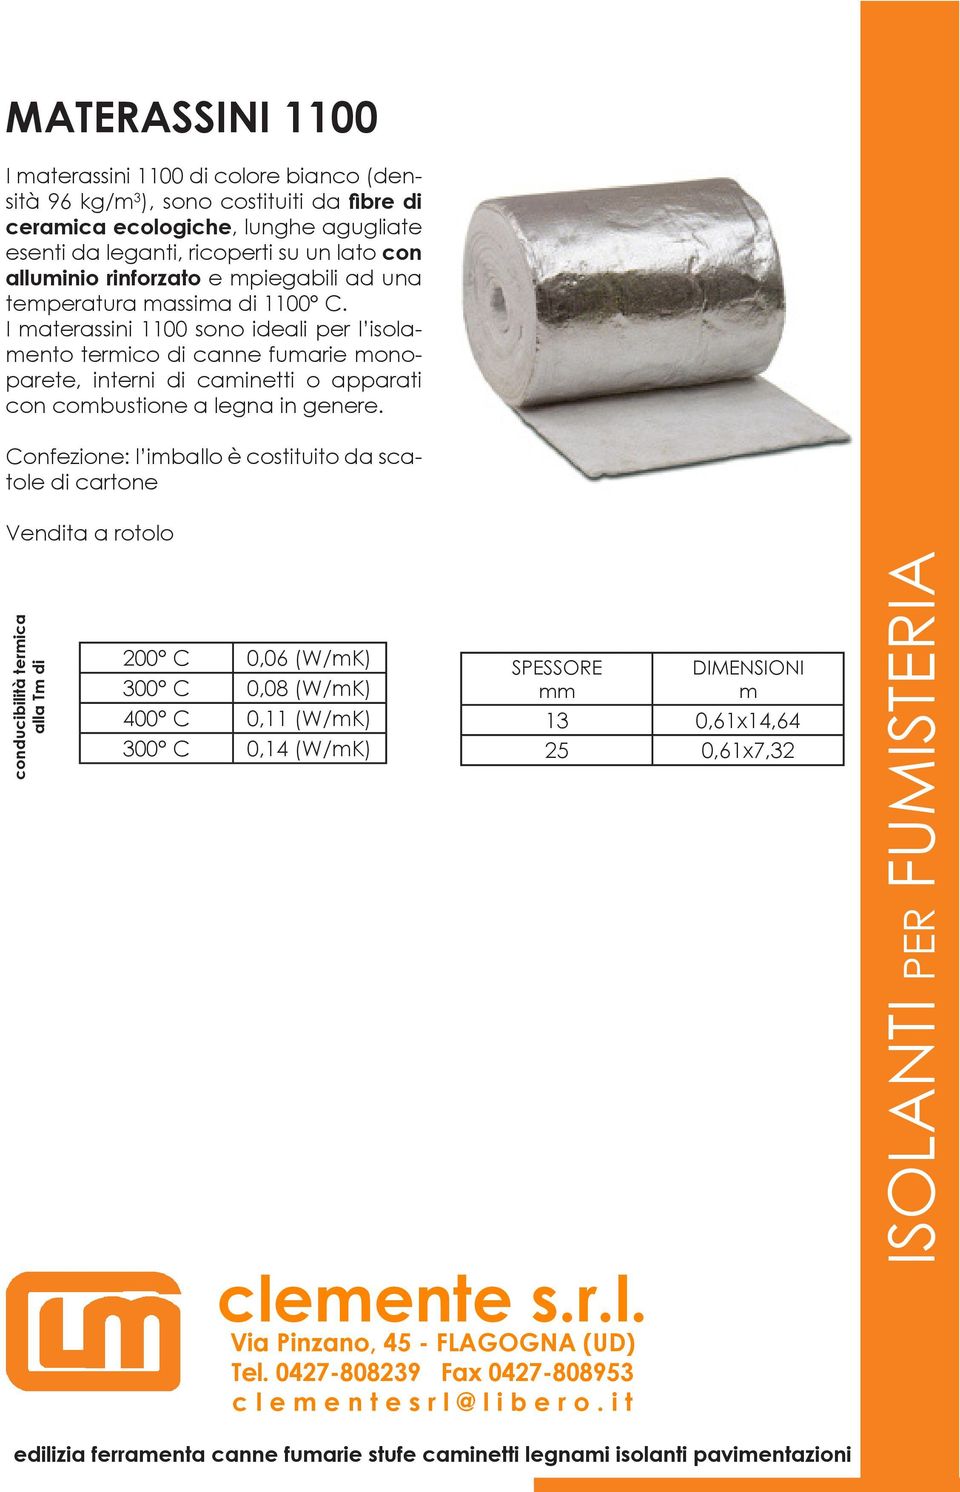 I materassini 1100 sono ideali per l isolamento termico di canne fumarie monoparete, interni di caminetti o apparati con combustione a legna in genere.